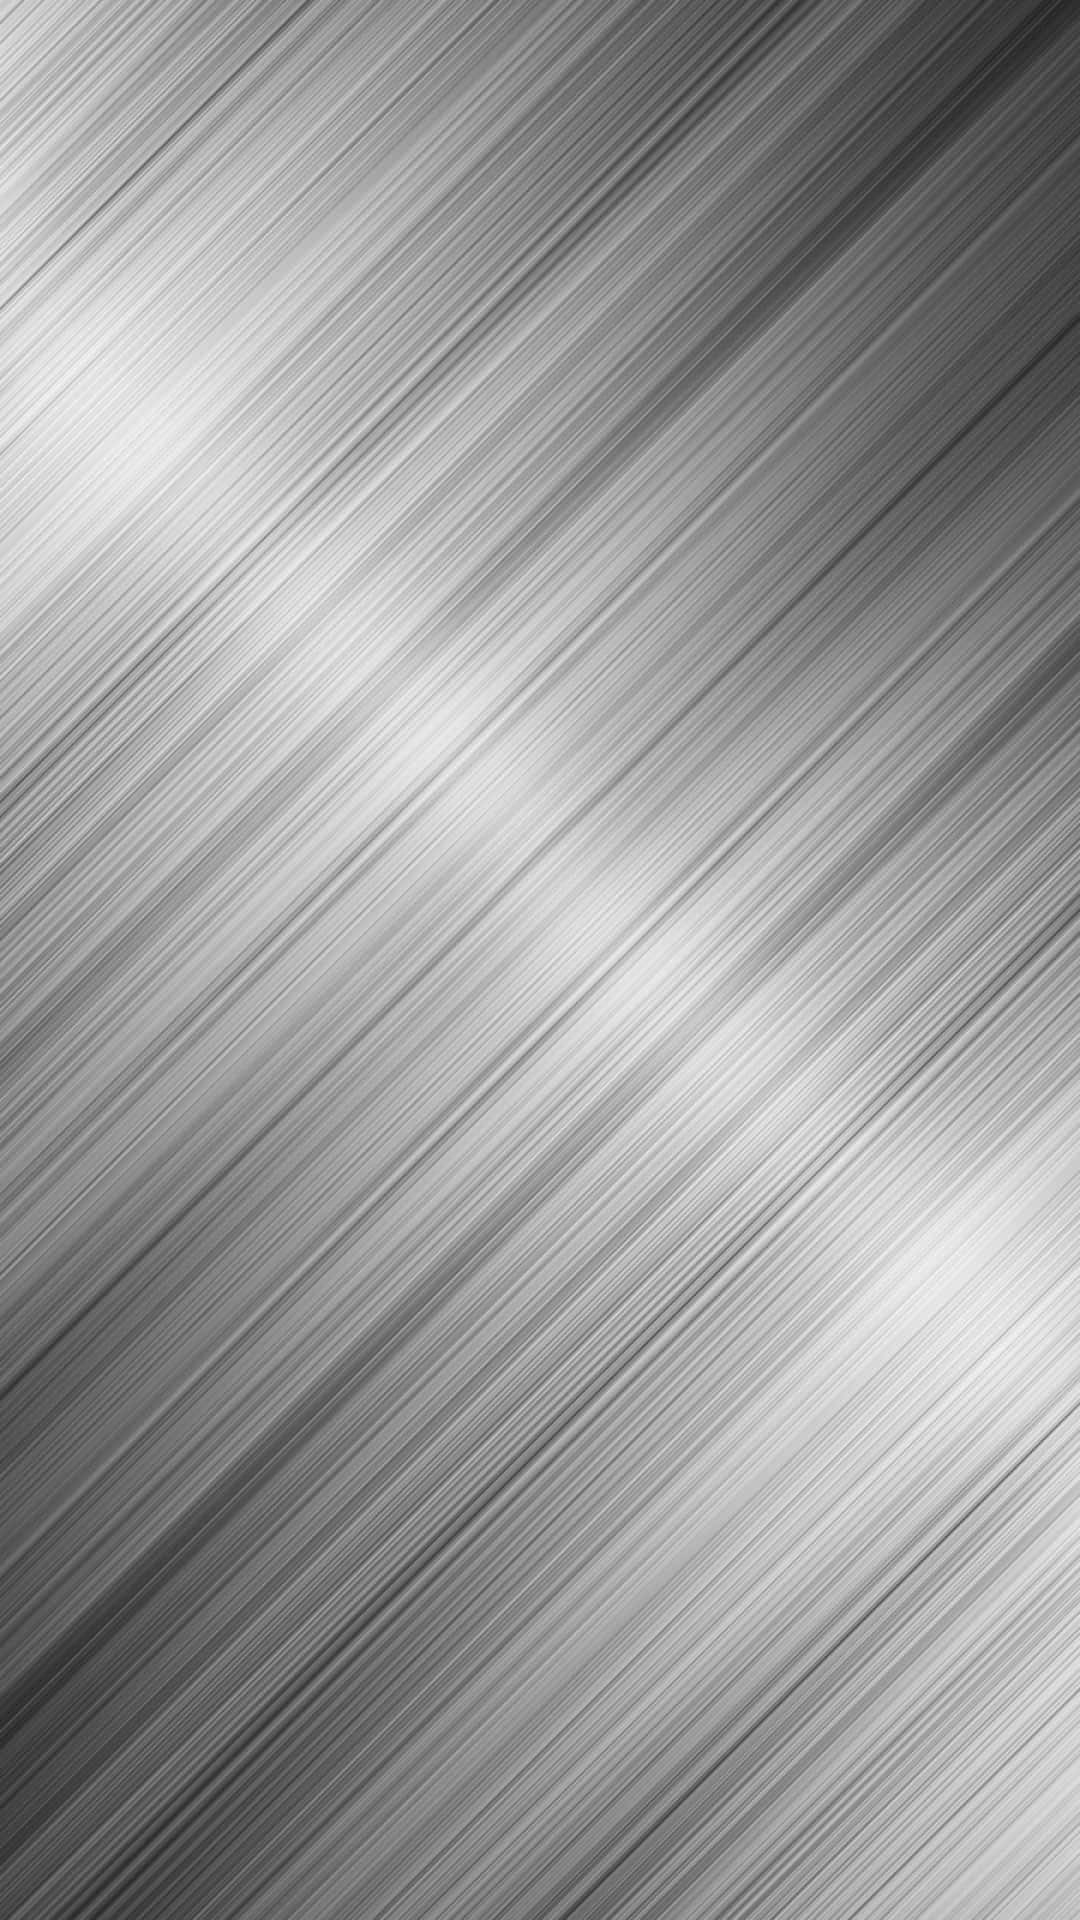 Shiny Silver Foil Background